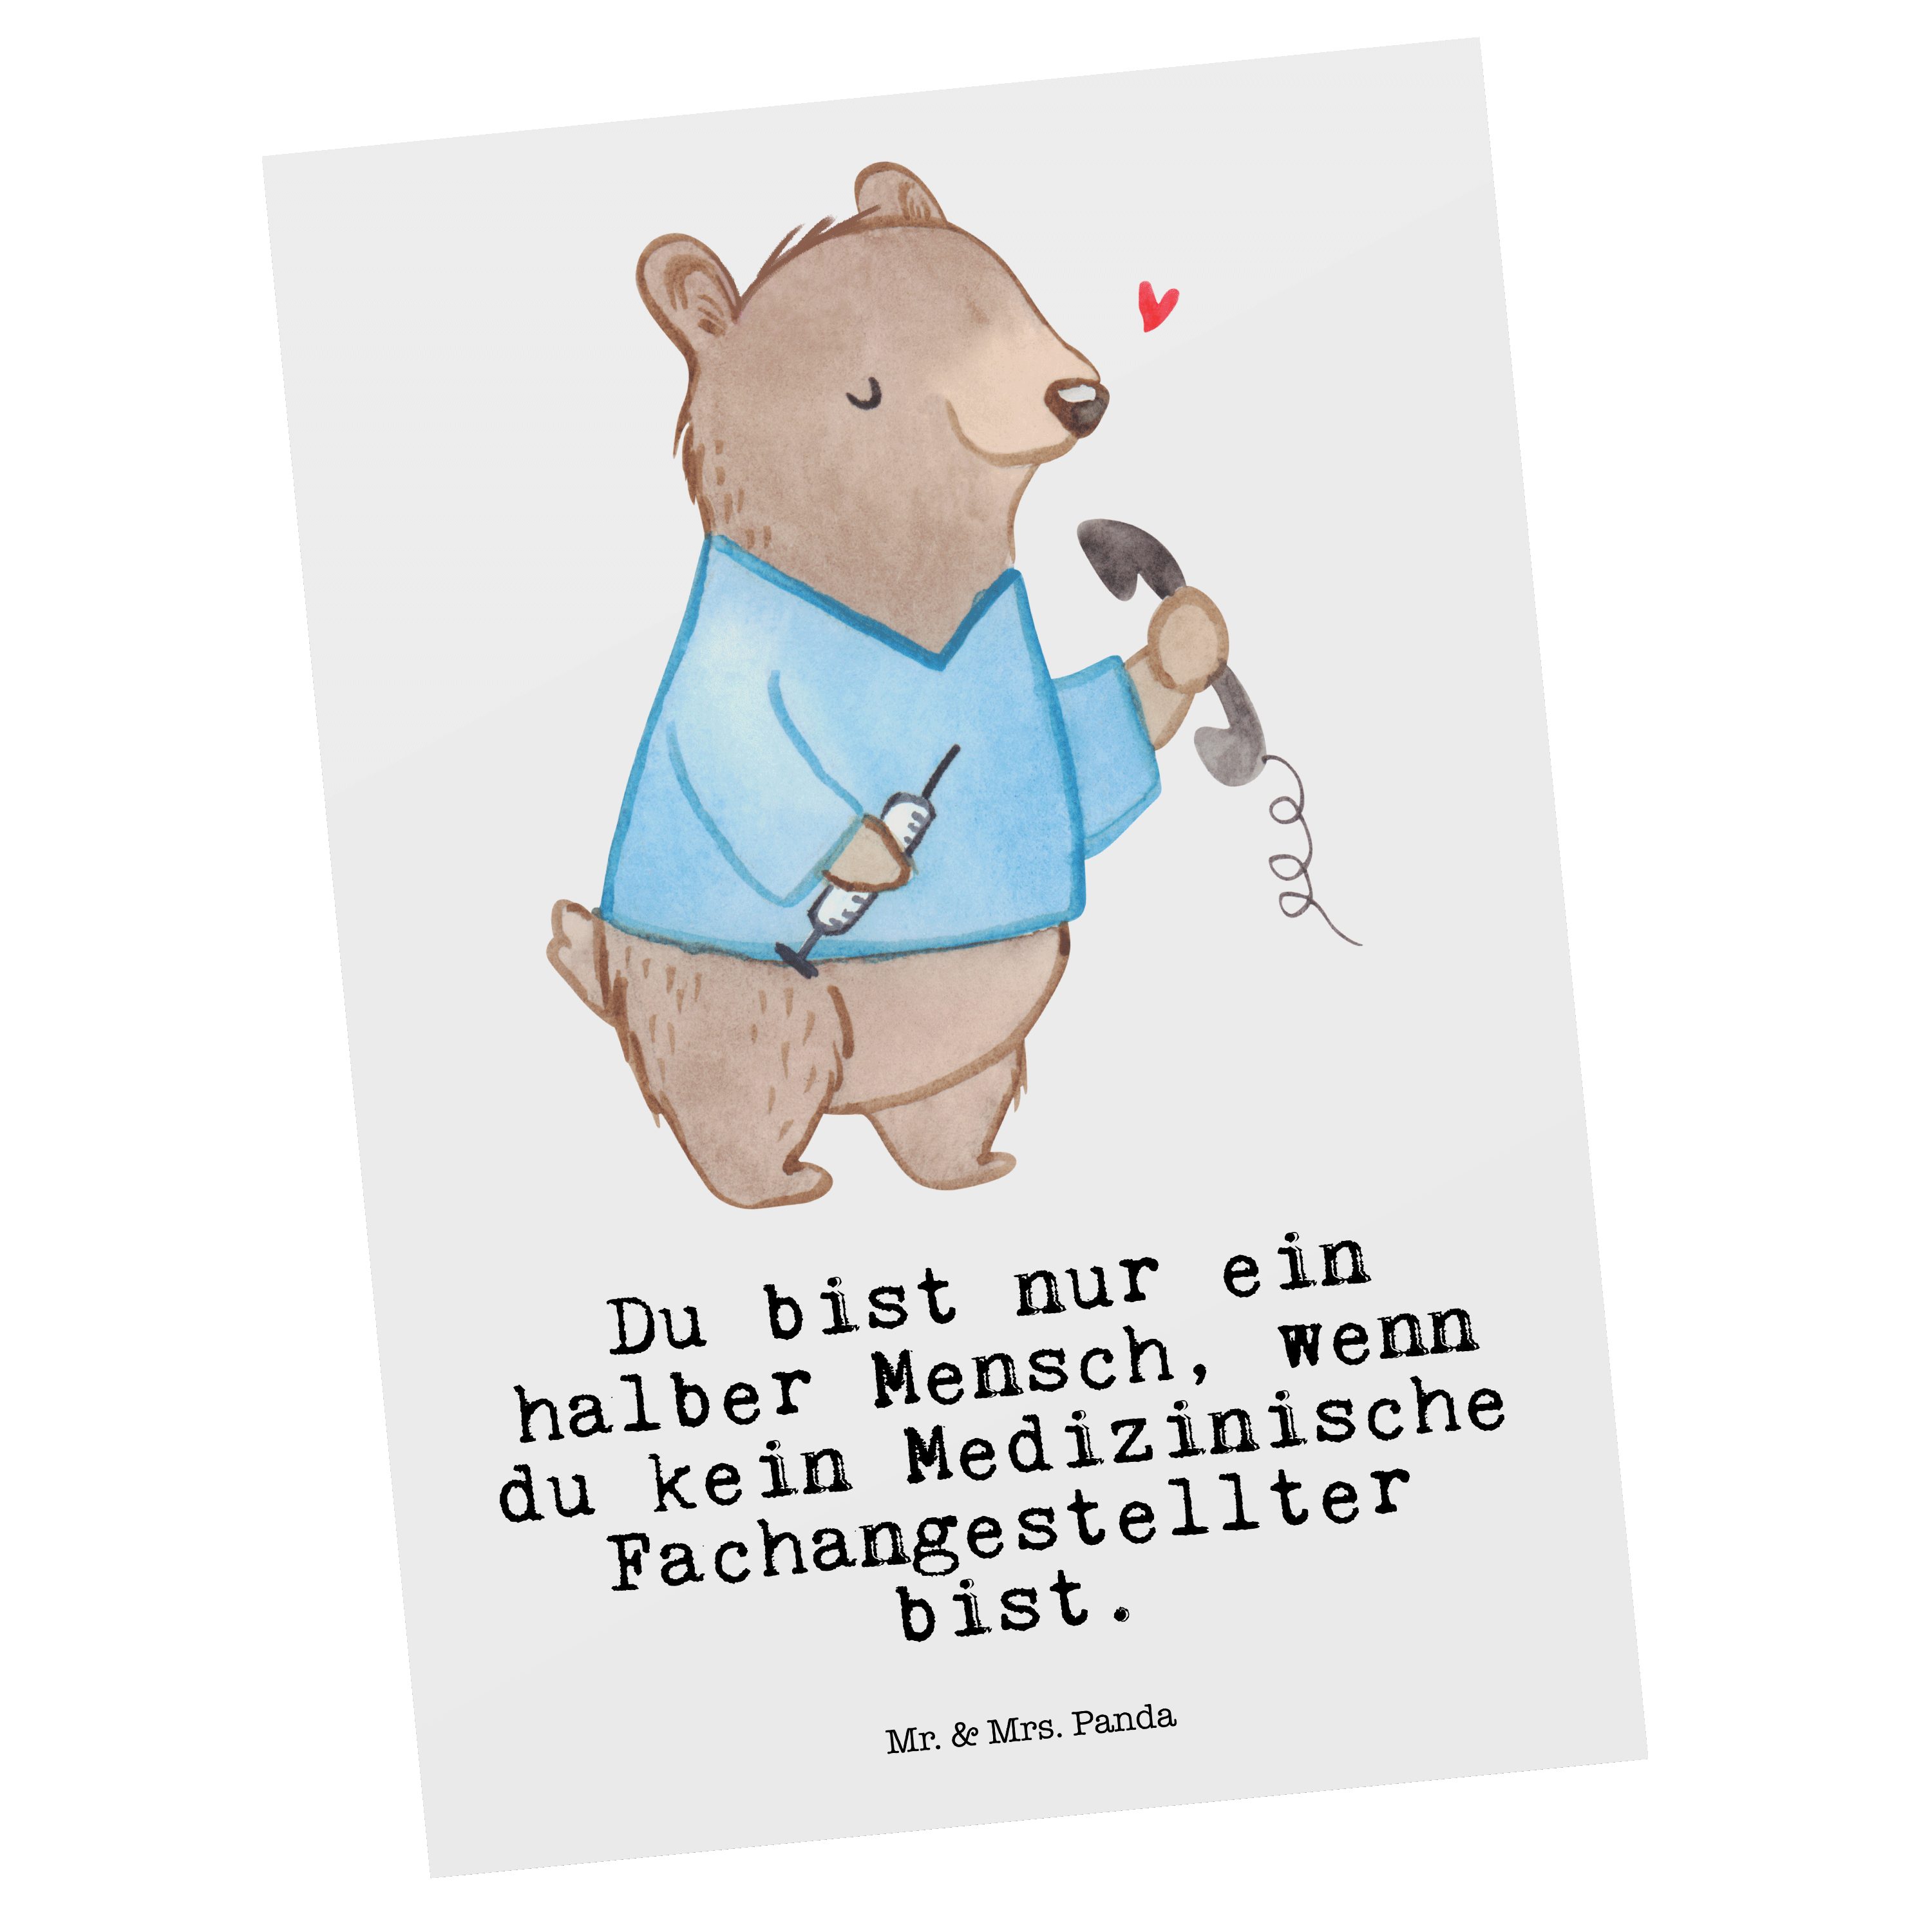 Mr. & Mrs. Panda Postkarte Medizinische Fachangestellter mit Herz - Weiß - Geschenk, Grußkarte